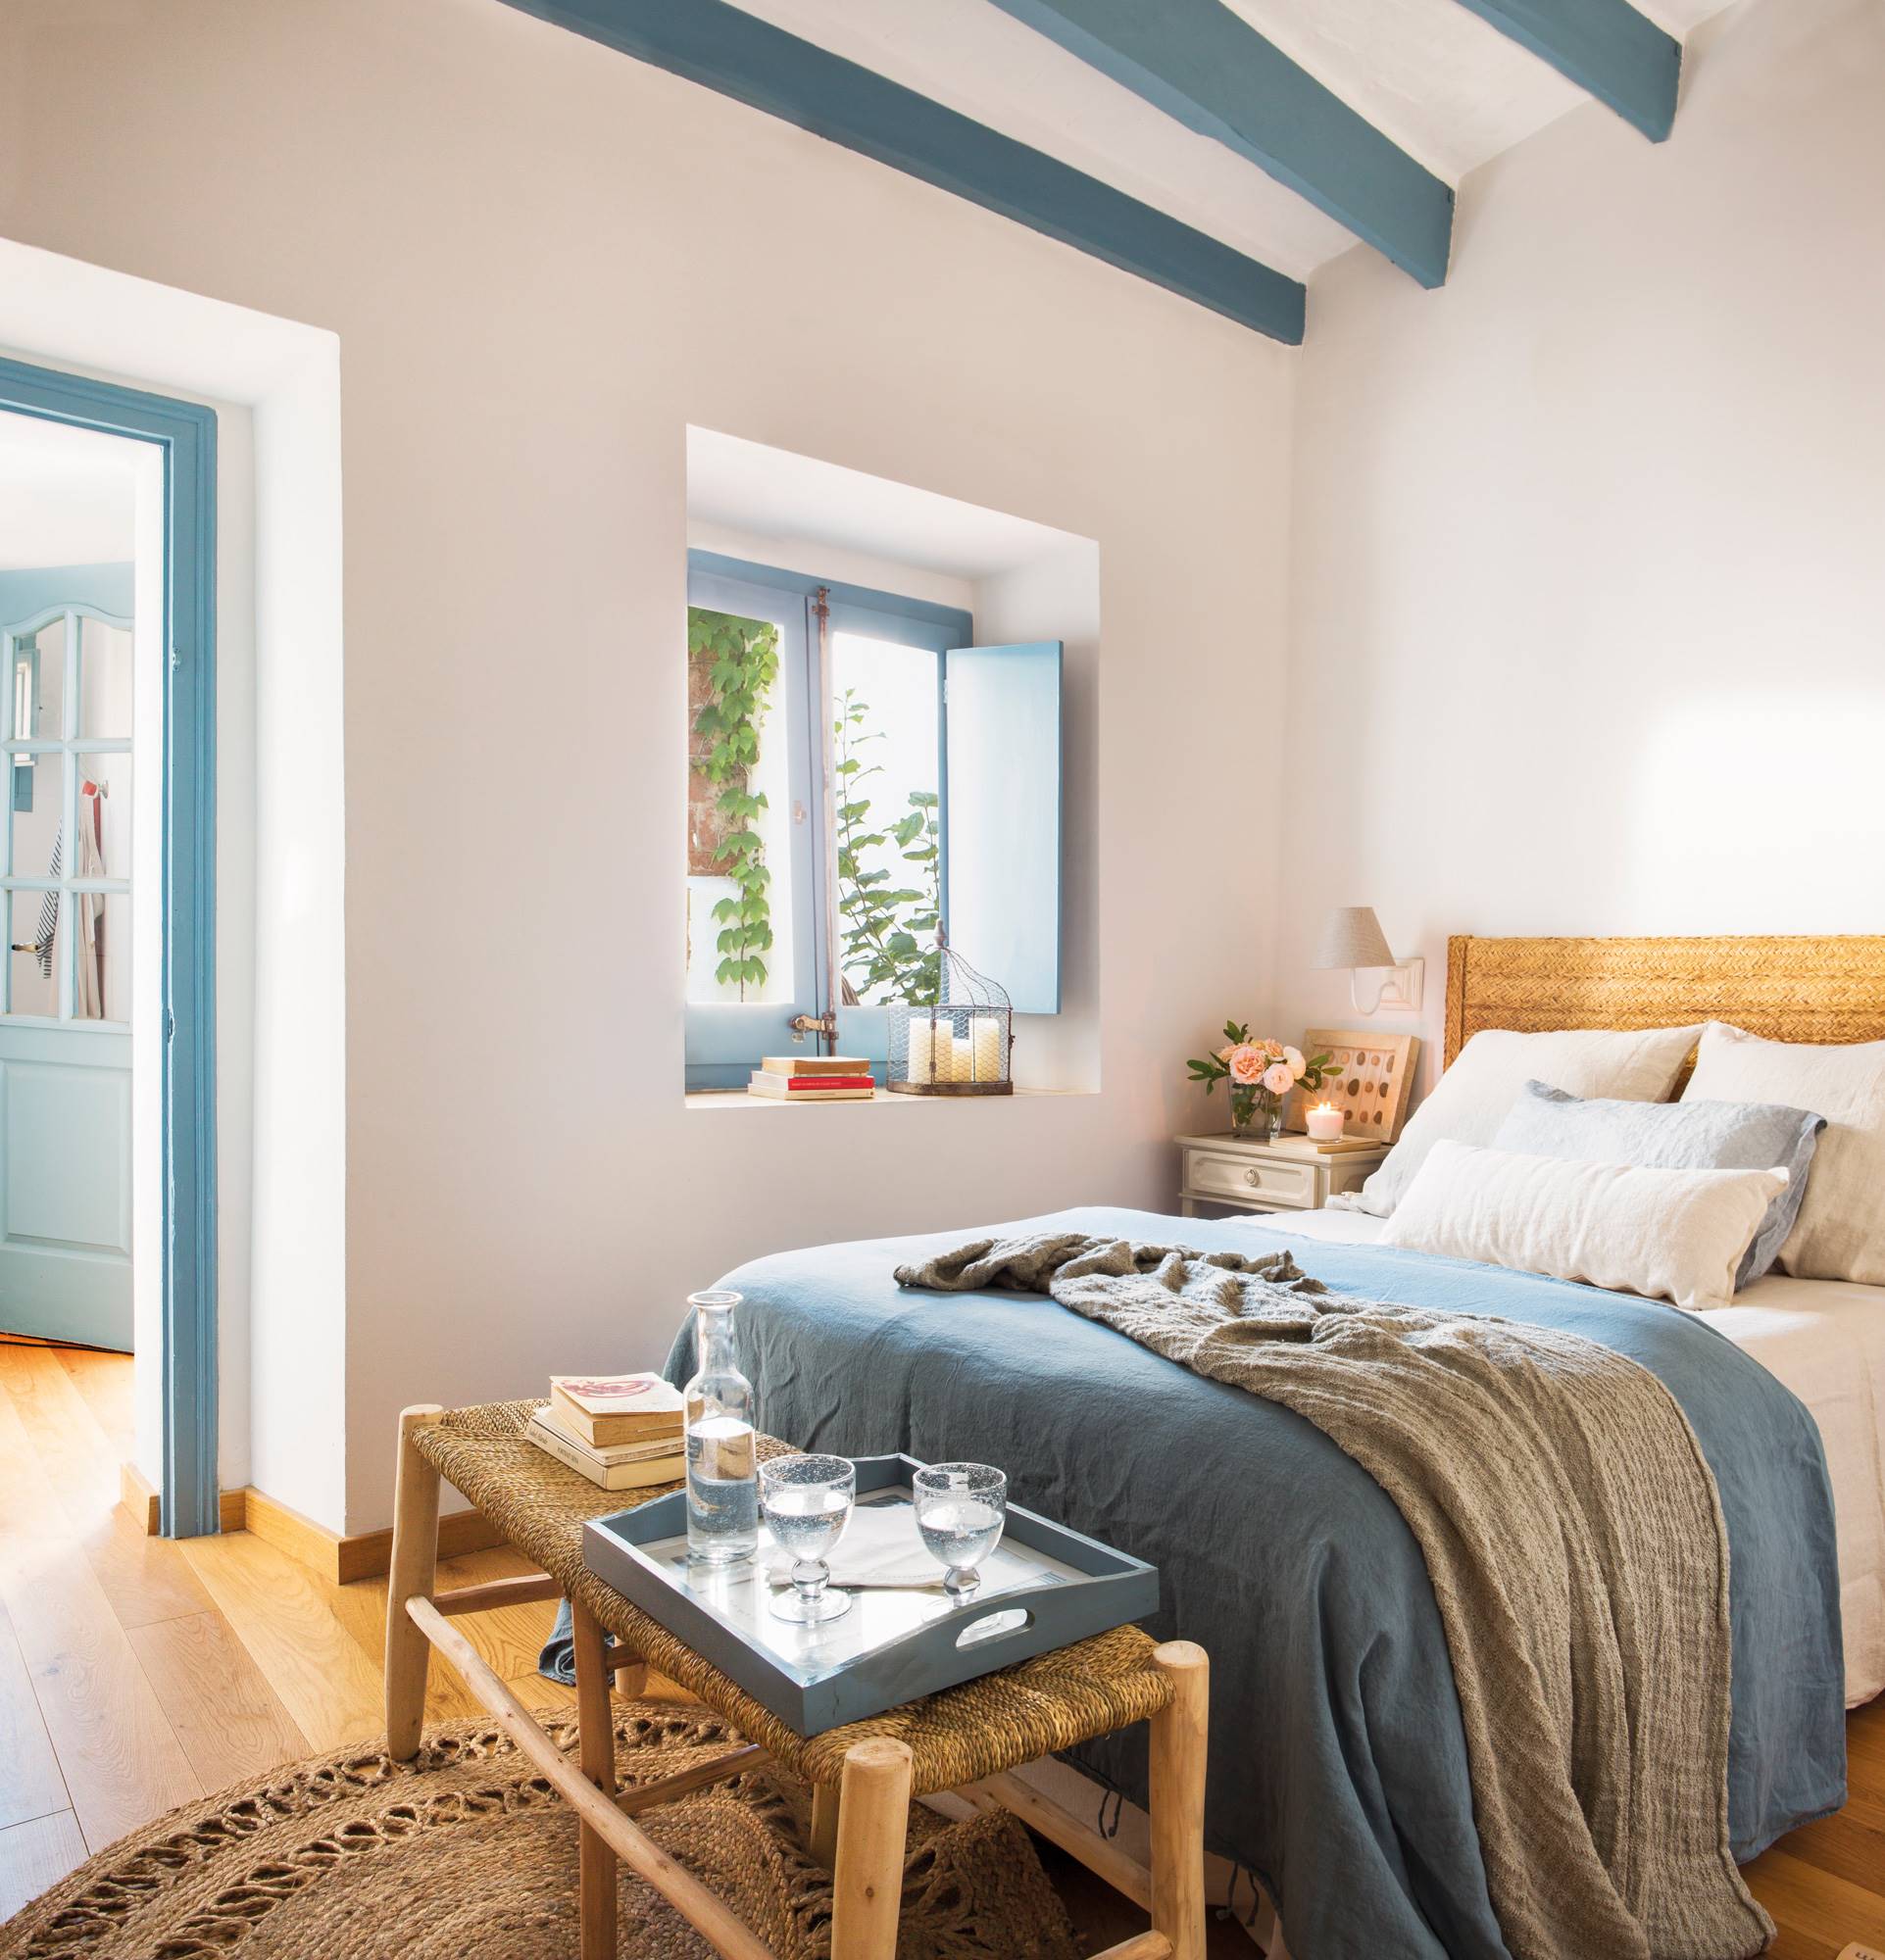 Dormitorio de verano en blanco y con detalles azules_00489198